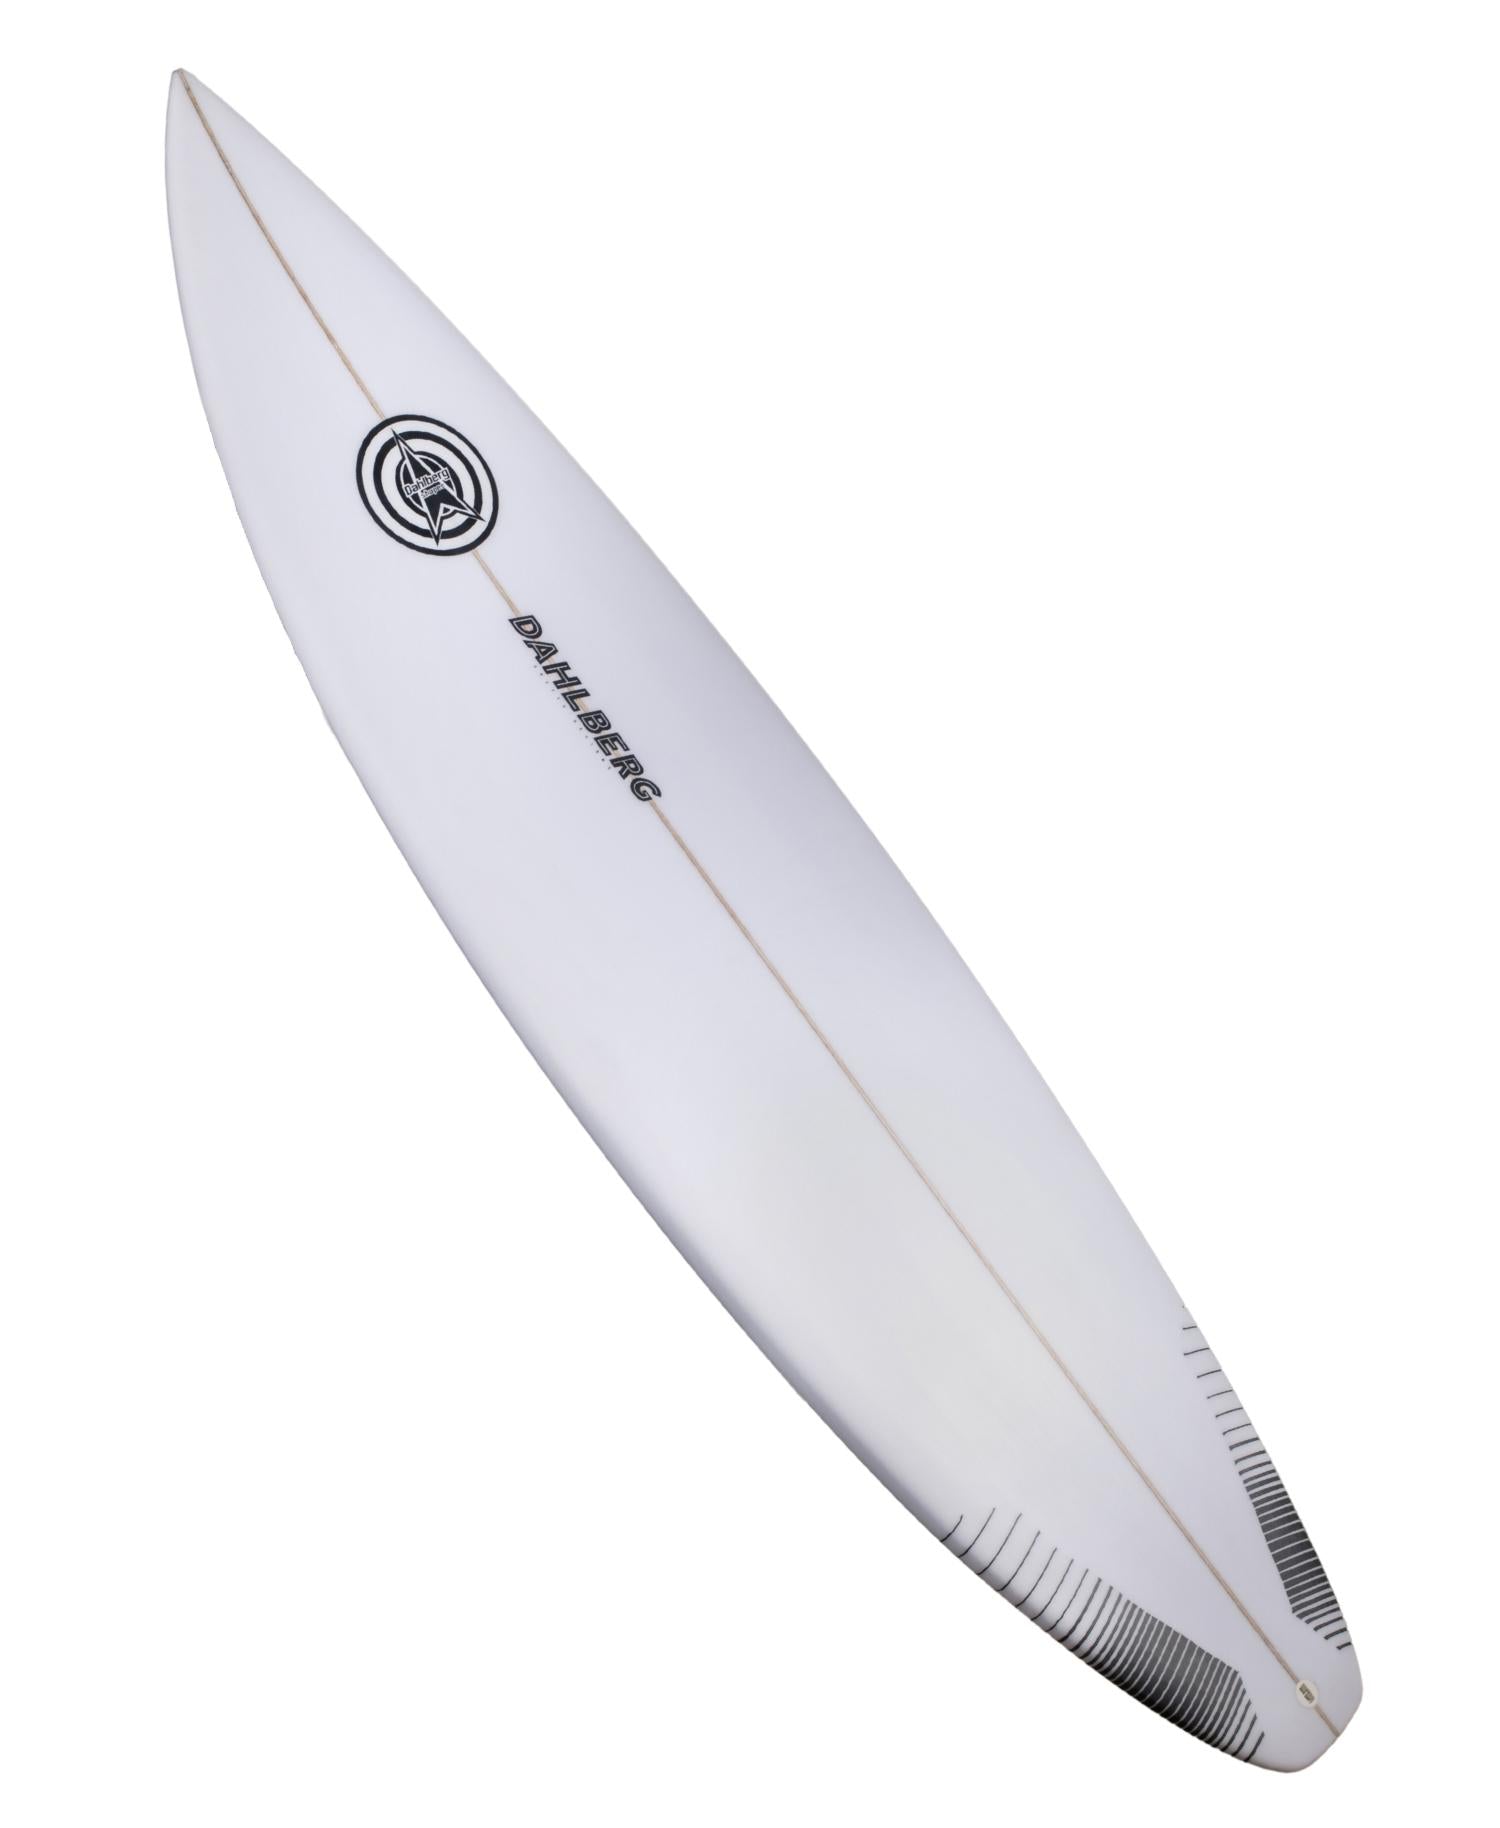 Dahlberg Surfboards by Rod Dahlberg – Sideways